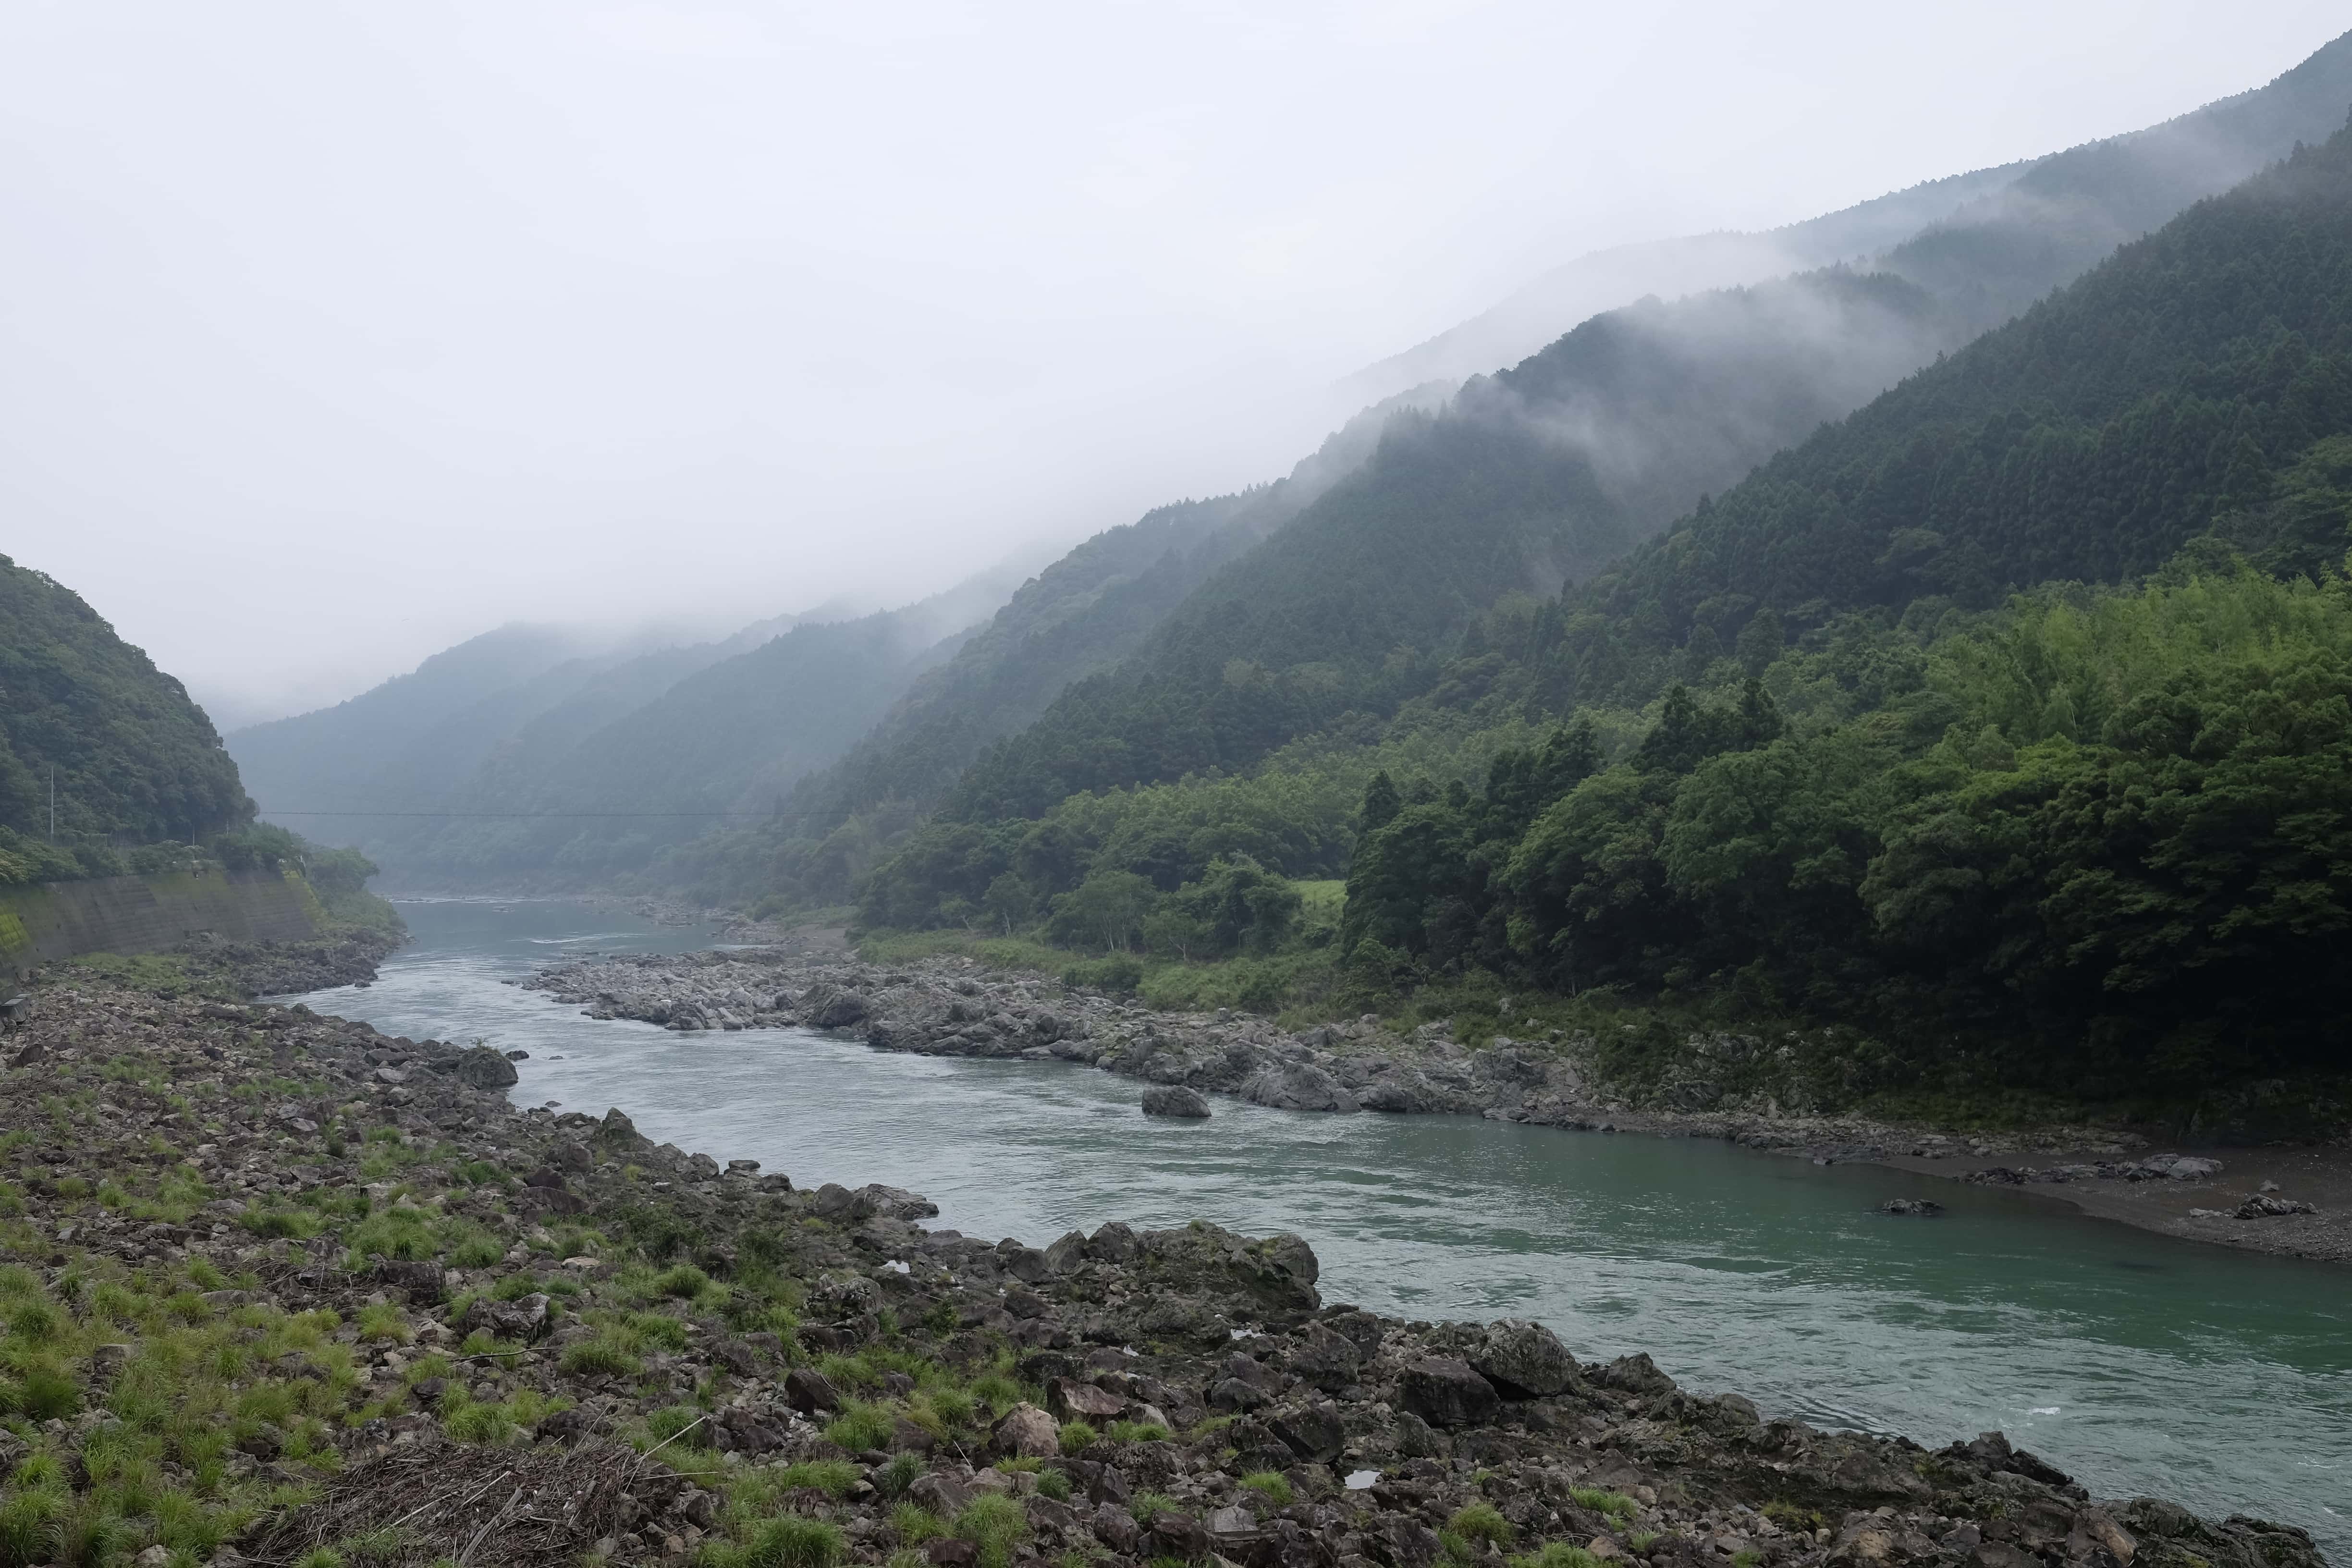 Nana River from Anan